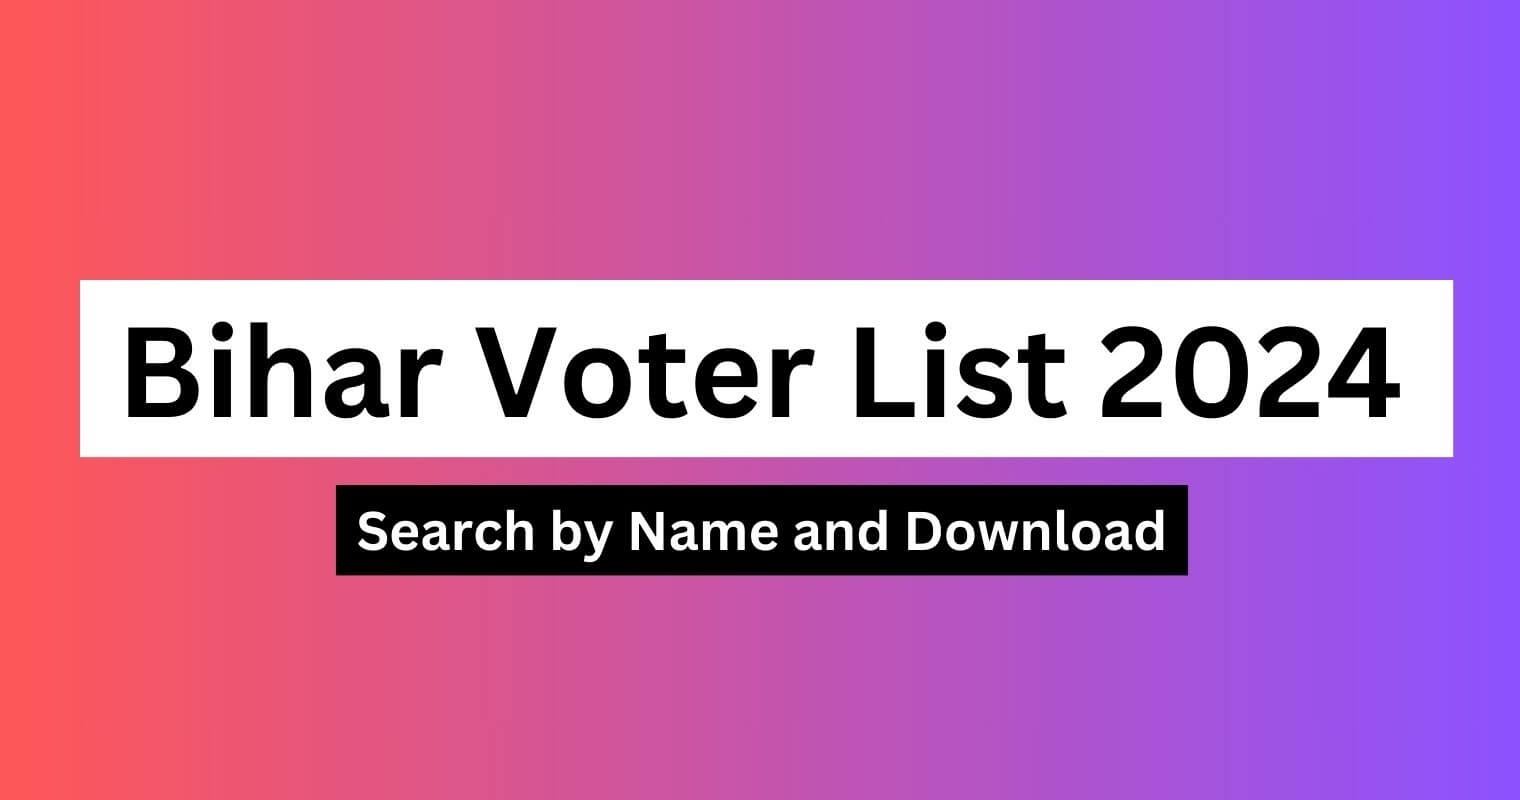 बिहार वोटर लिस्ट 2024 - नाम से खोजें, डाउनलोड करें